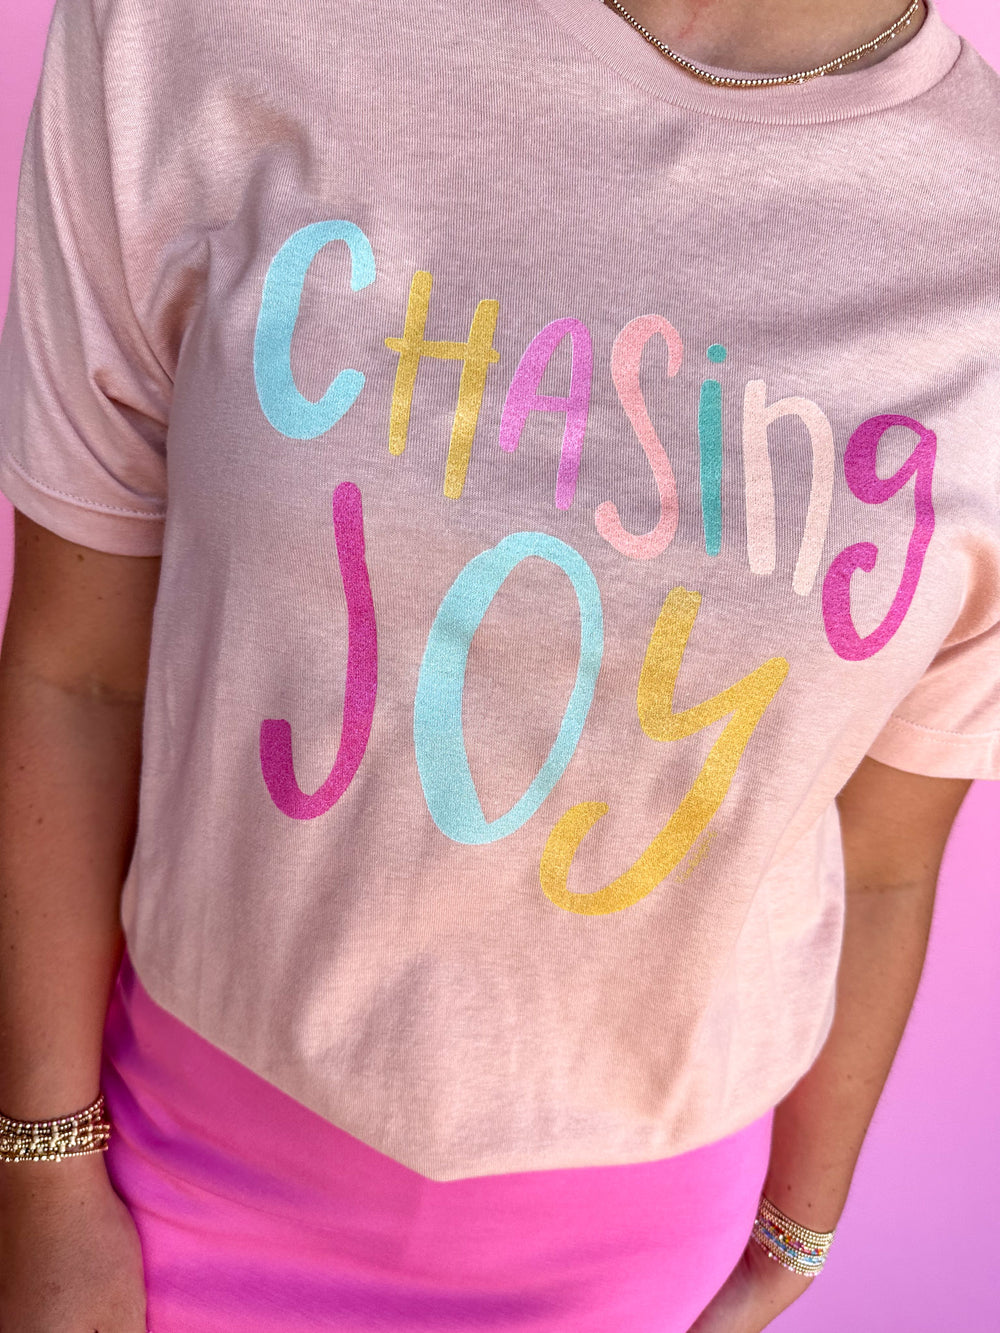 Chasing Joy Tee